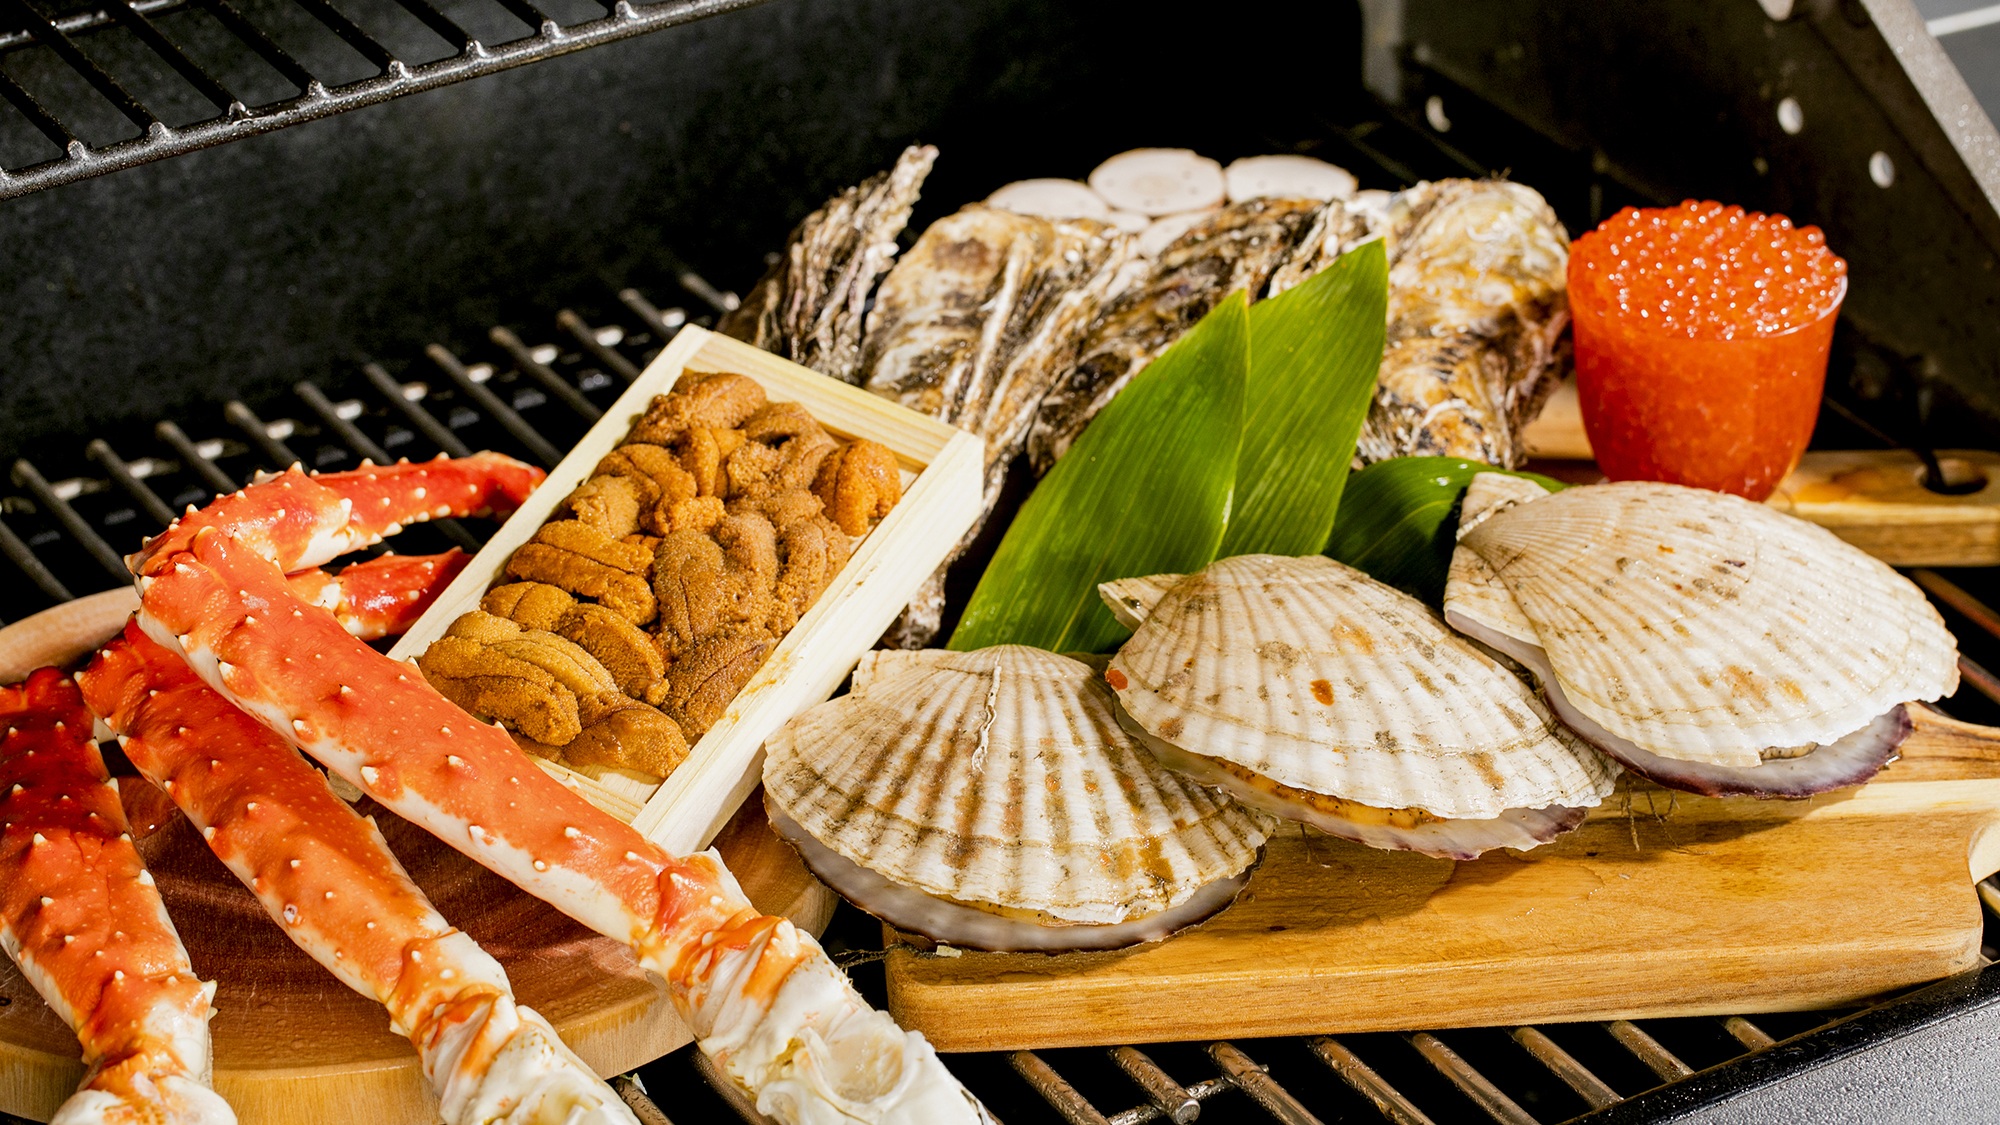 【海鮮BBQ】タラバガニ・ウニ・イクラ・カキなどの厳選食材を、プライベートBBQで贅沢に♪